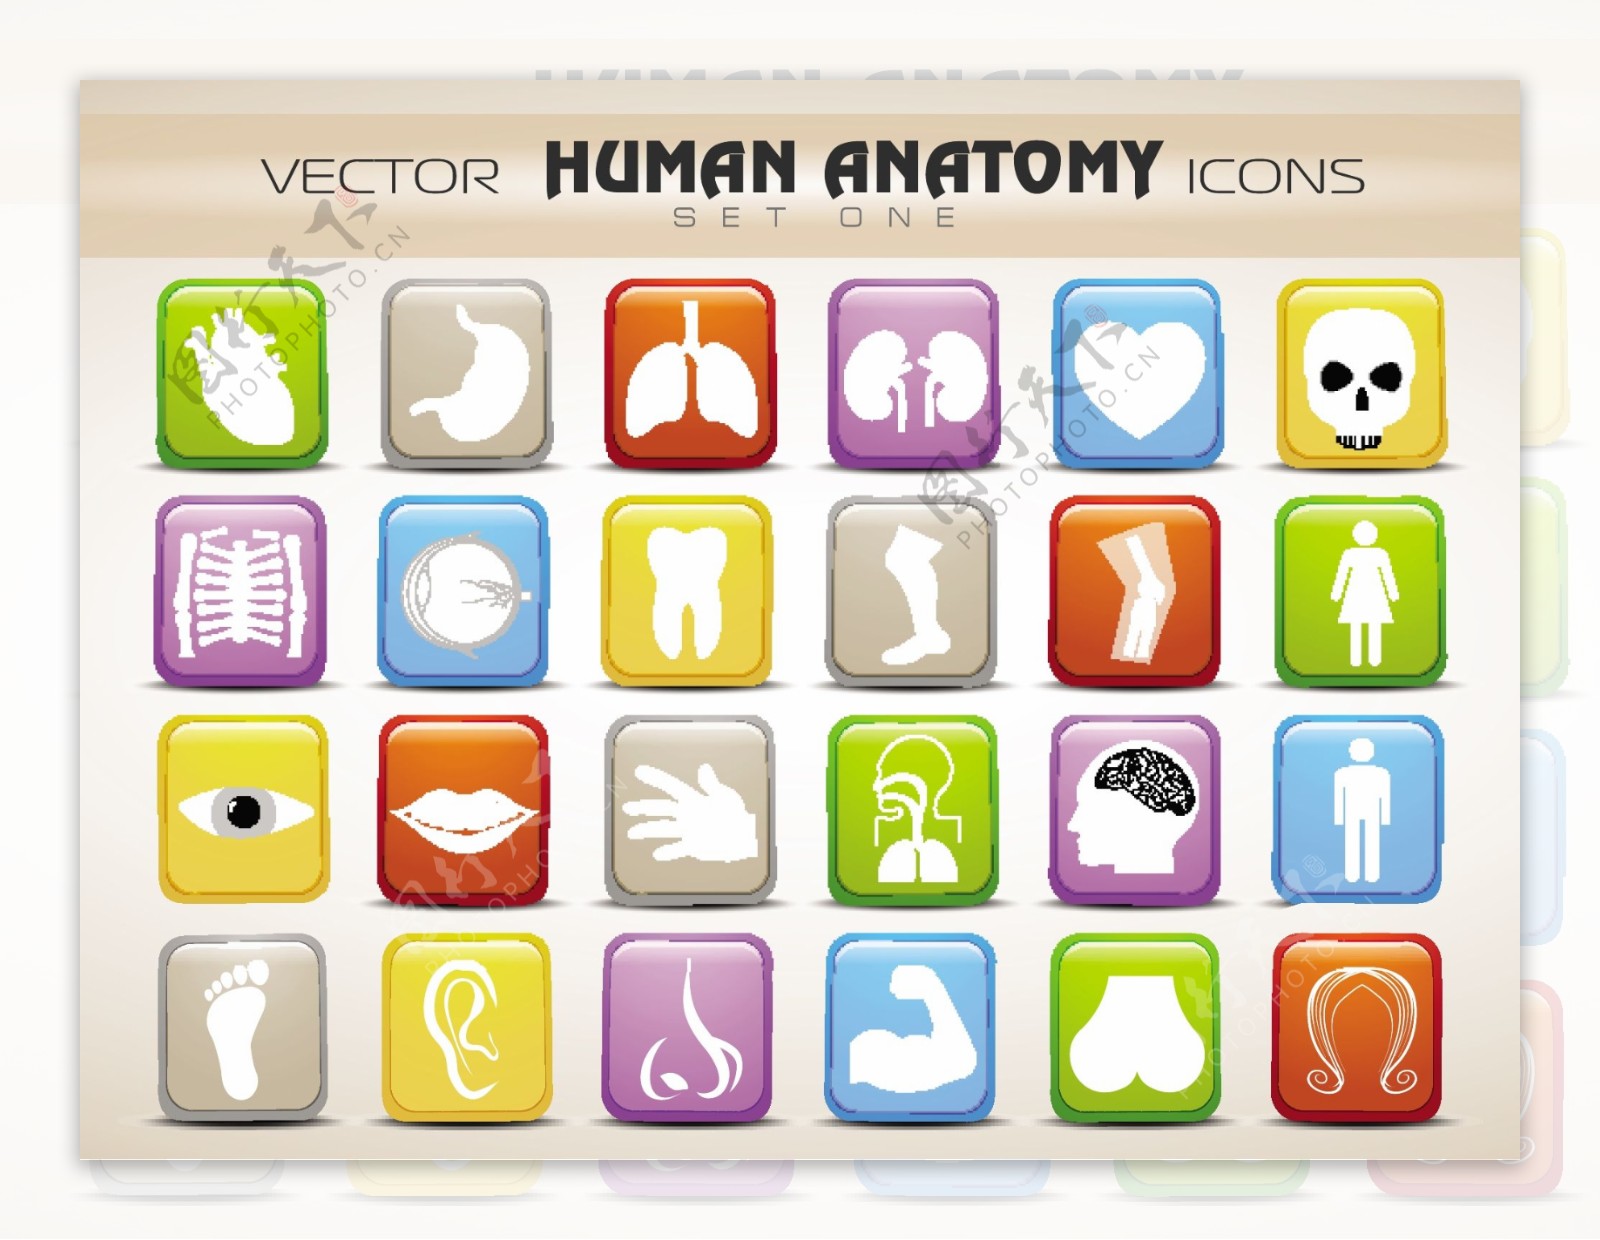 人体解剖学的网站图标集